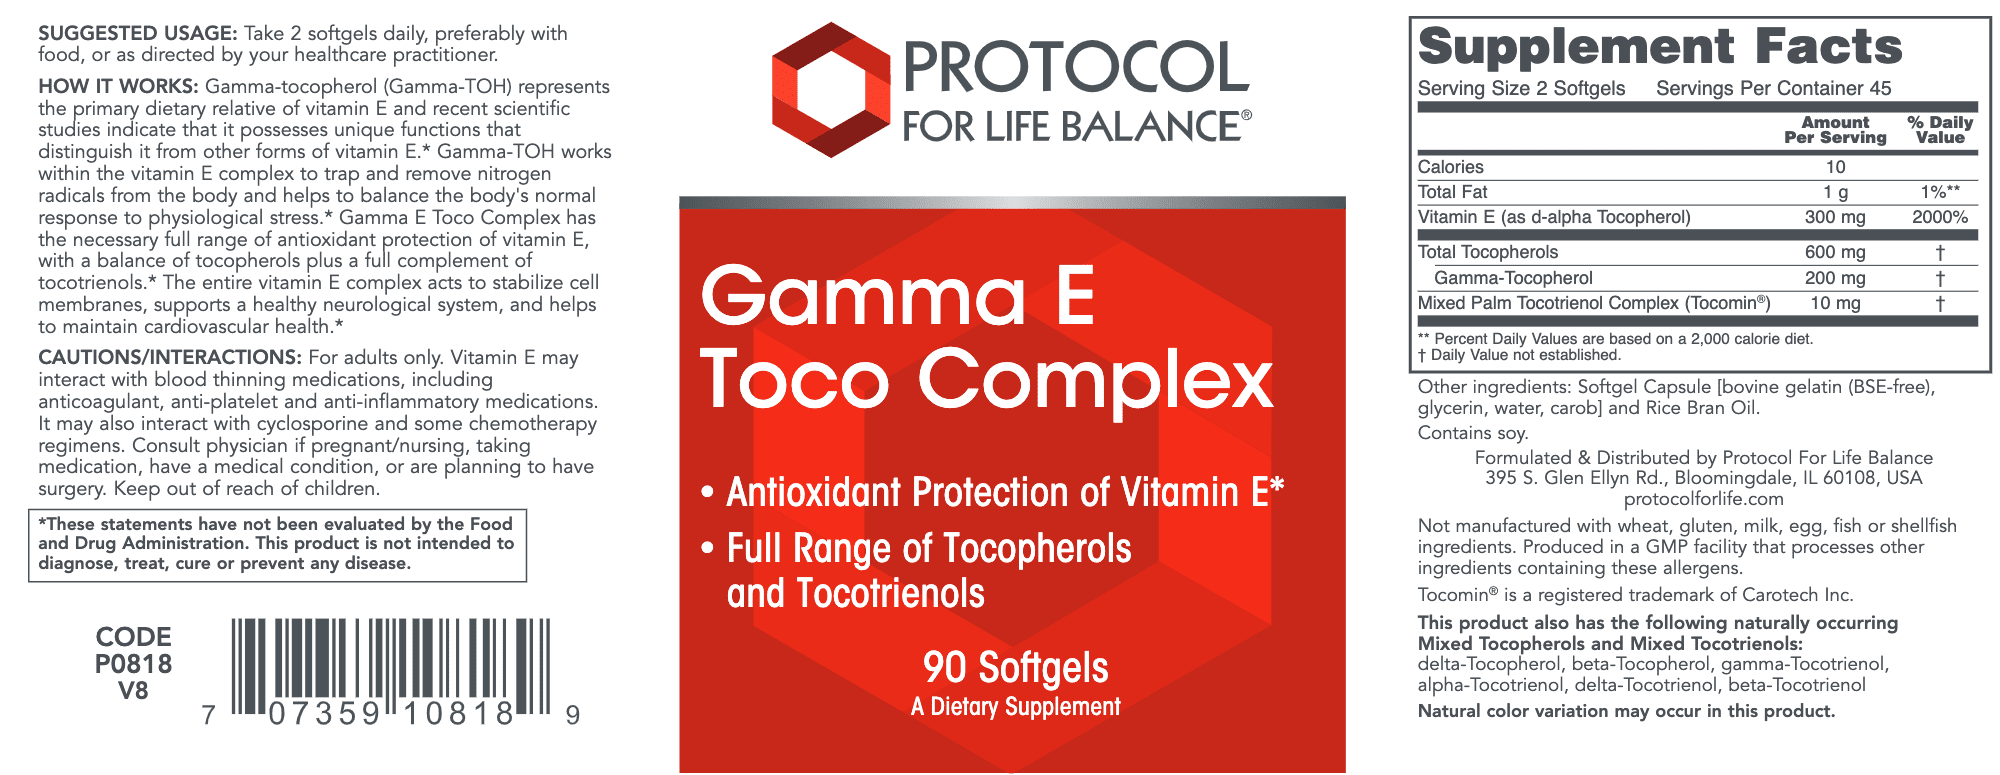 amma Vitamin E Complex 90 gels